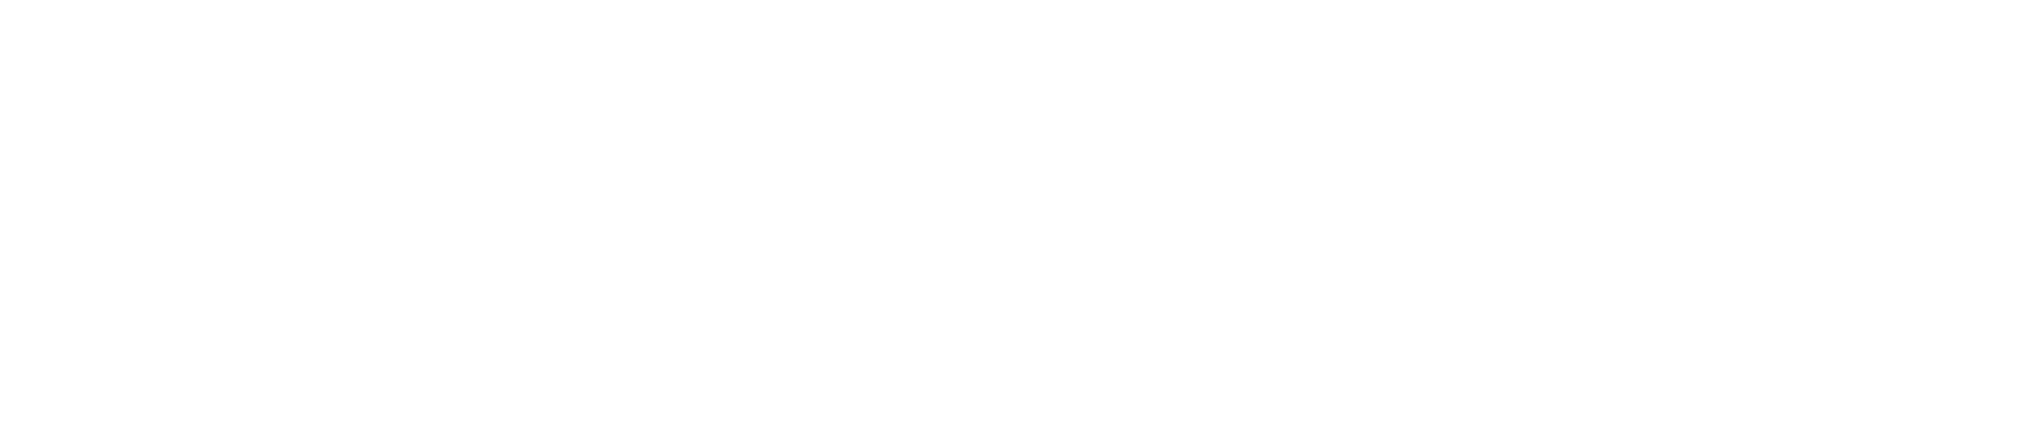 001-merken/technogel/001-logos/technogel-logo.png